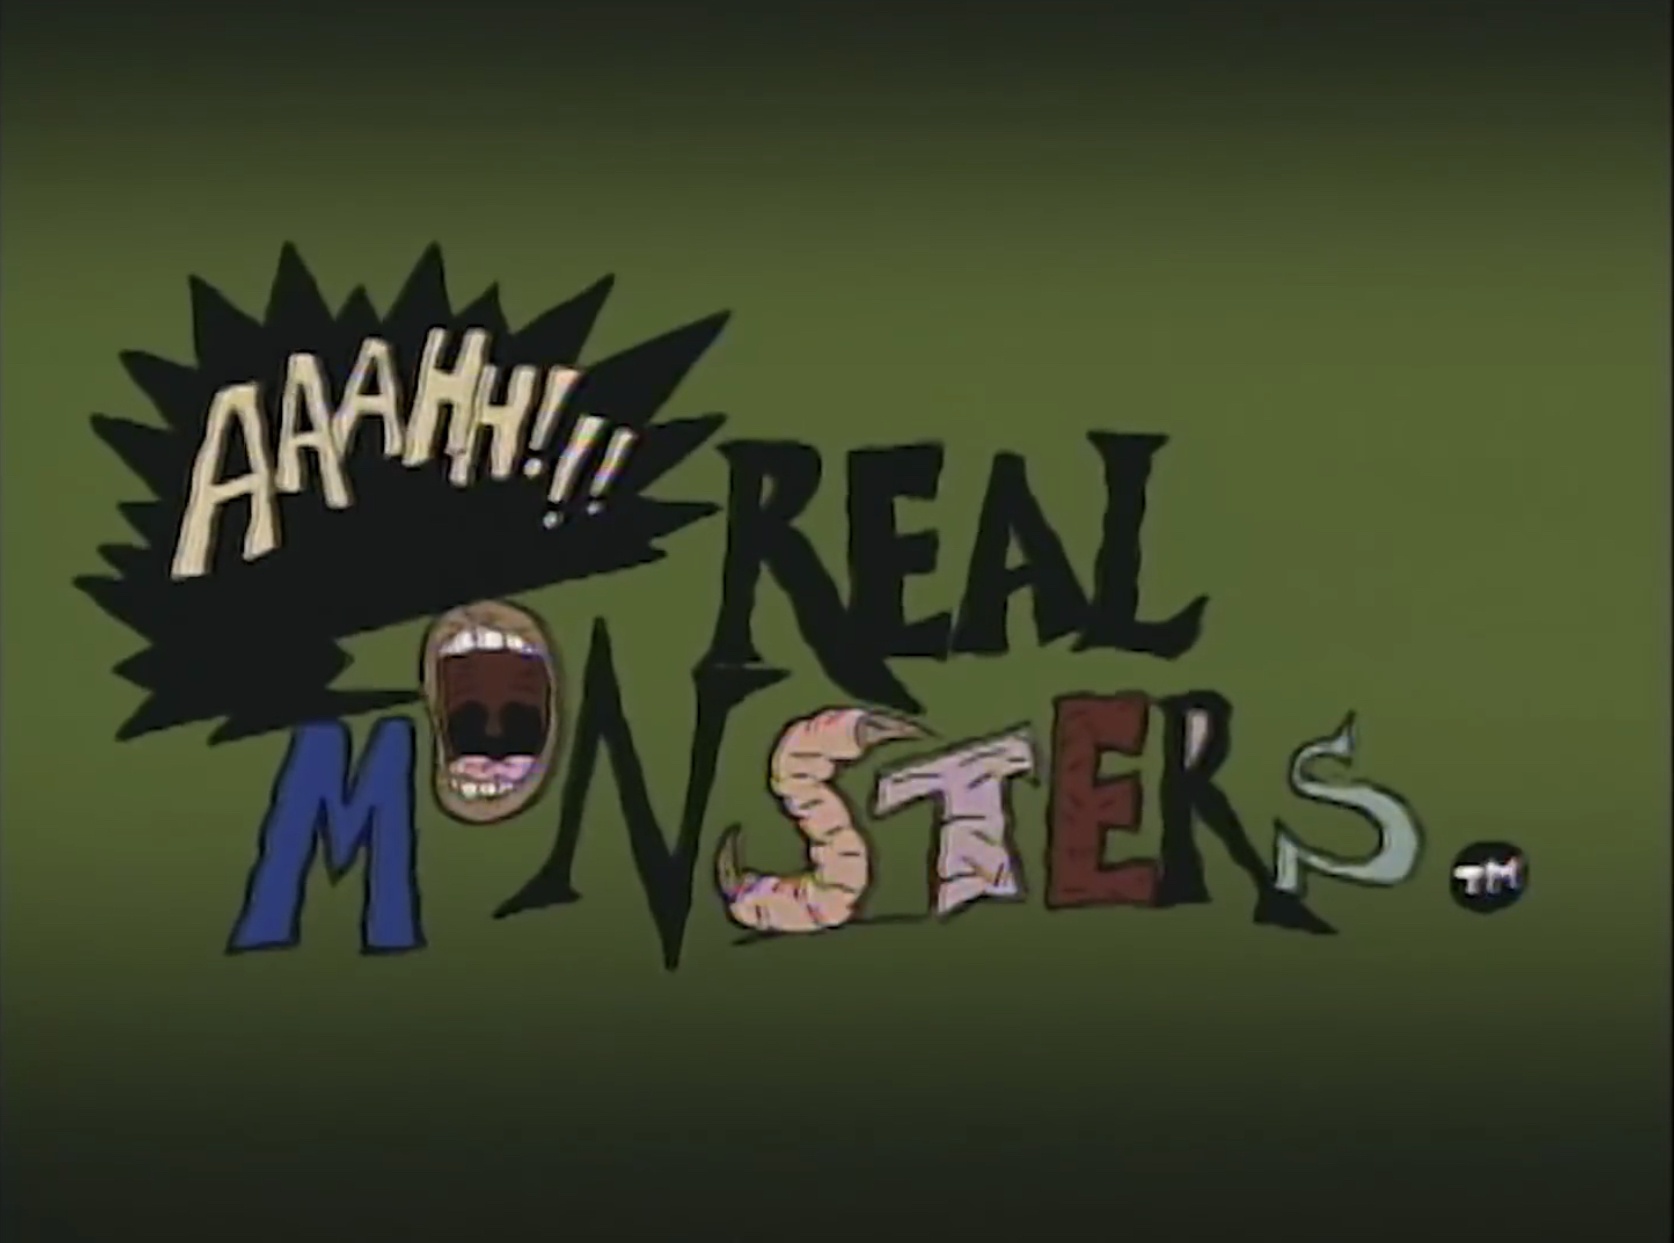 Aaahh real monsters logo